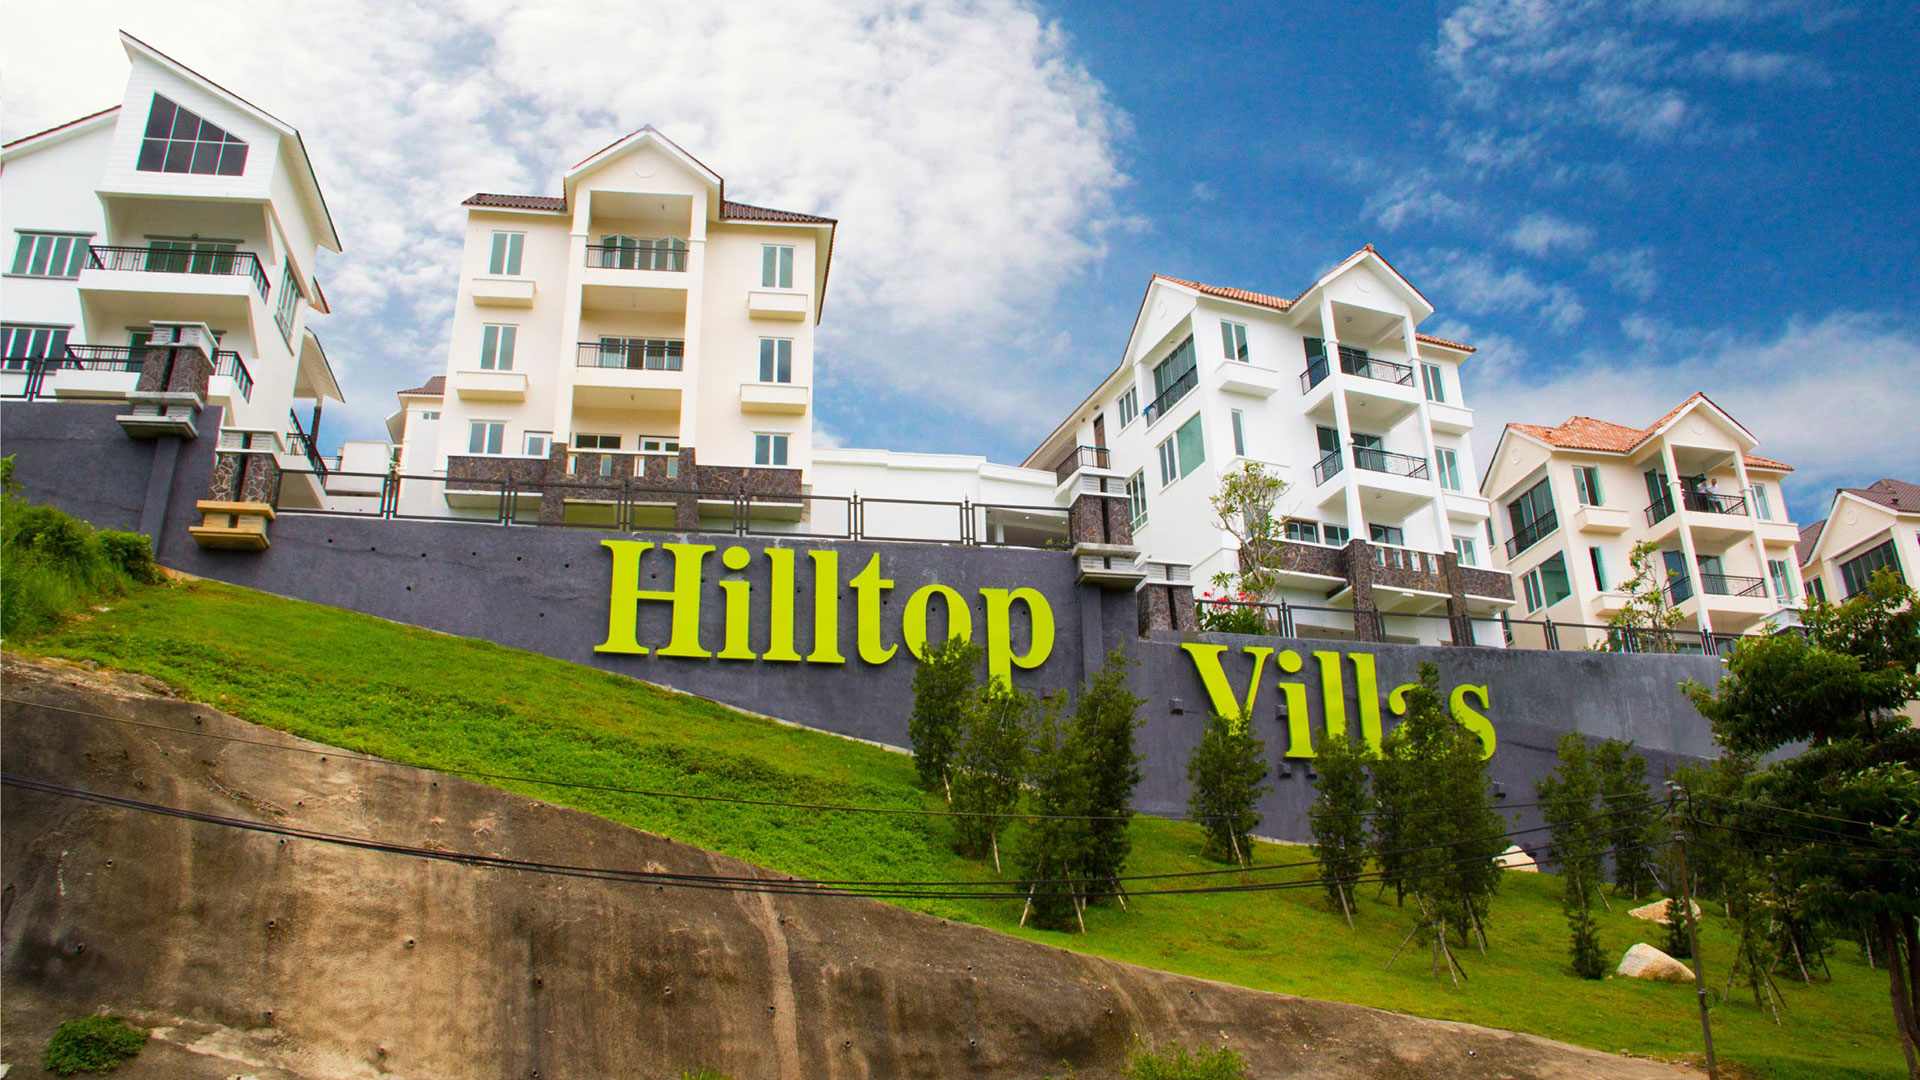 Hilltop Villas